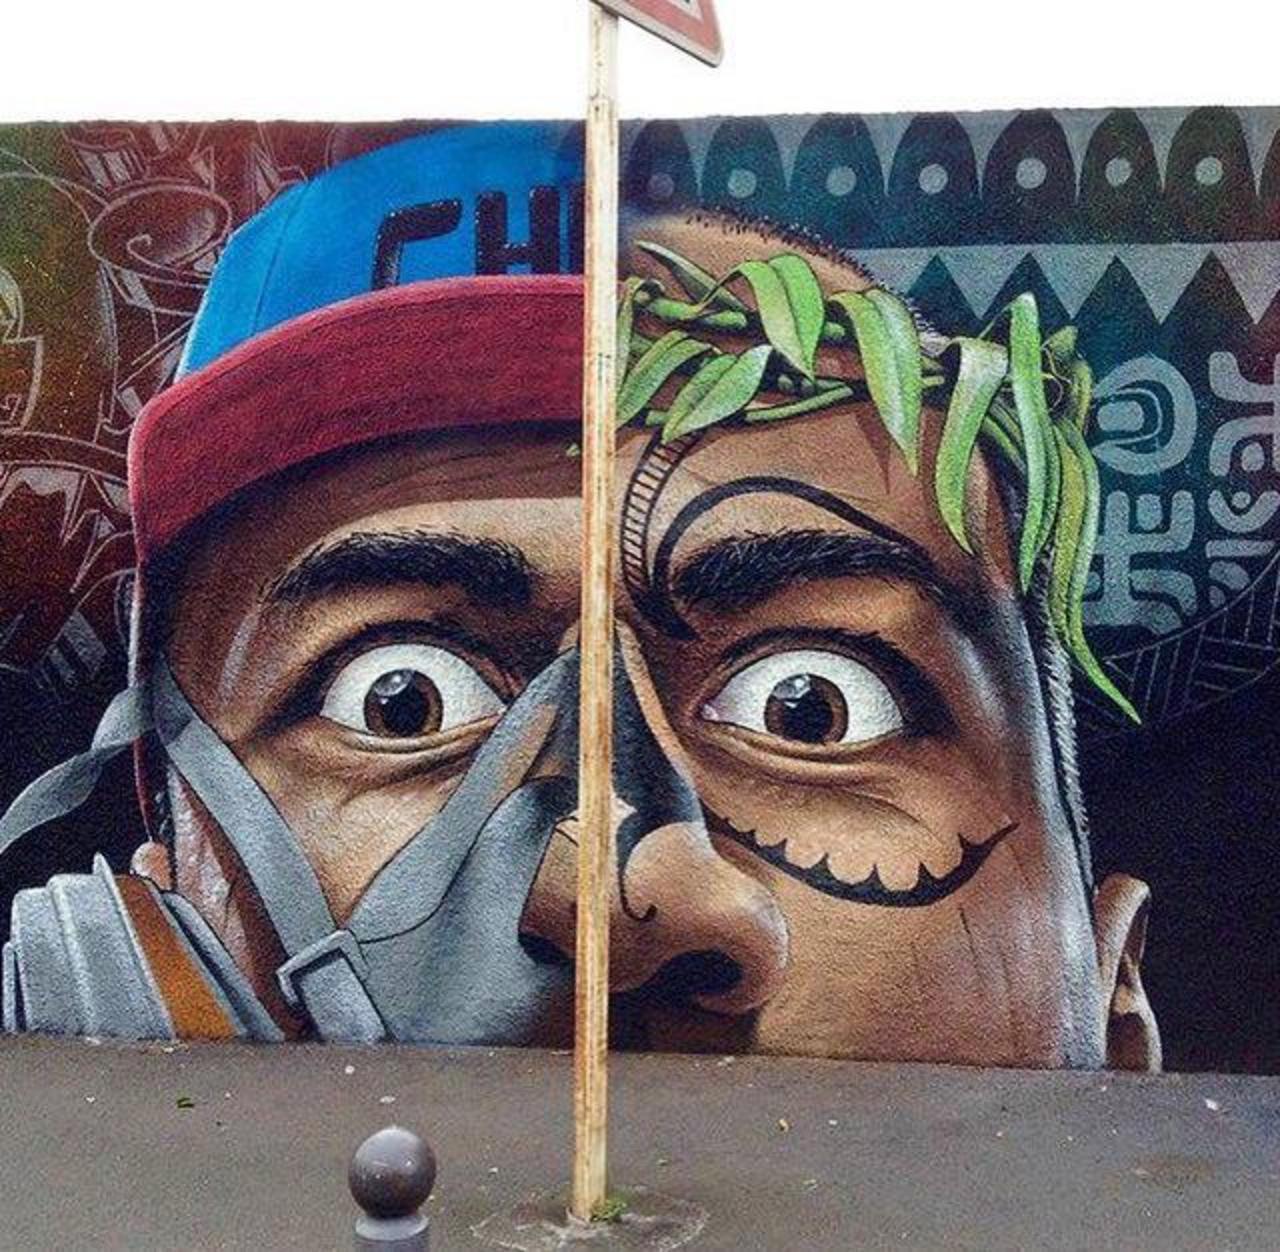 New Street Art by ChemiS 

#art #arte #graffiti #streetart http://t.co/RegOLgkWLF